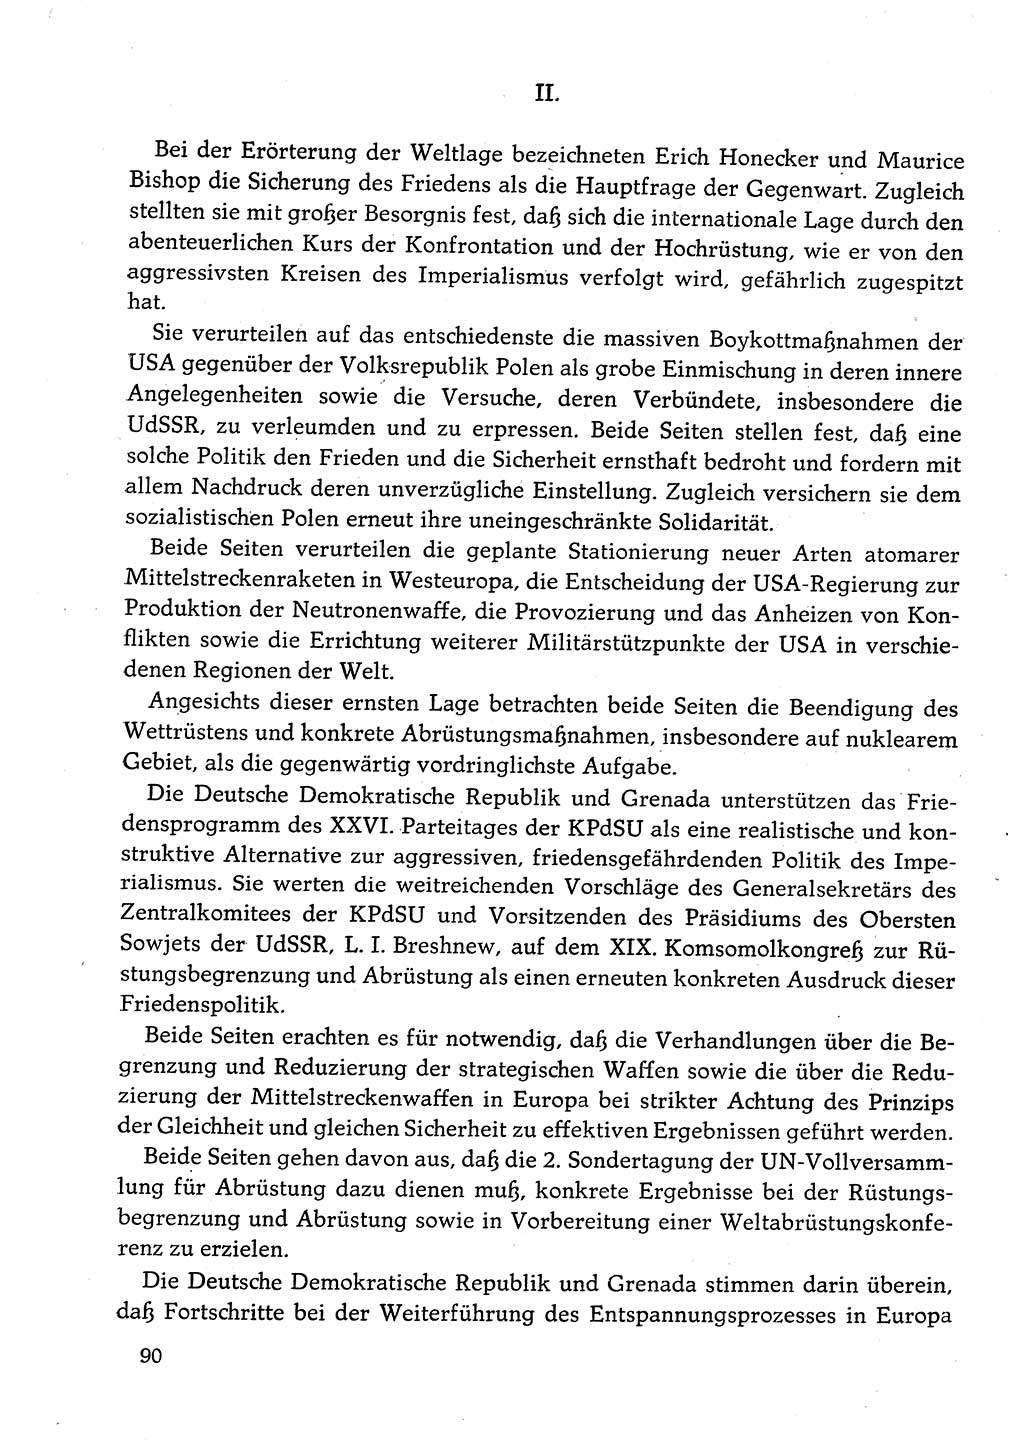 Dokumente der Sozialistischen Einheitspartei Deutschlands (SED) [Deutsche Demokratische Republik (DDR)] 1982-1983, Seite 90 (Dok. SED DDR 1982-1983, S. 90)